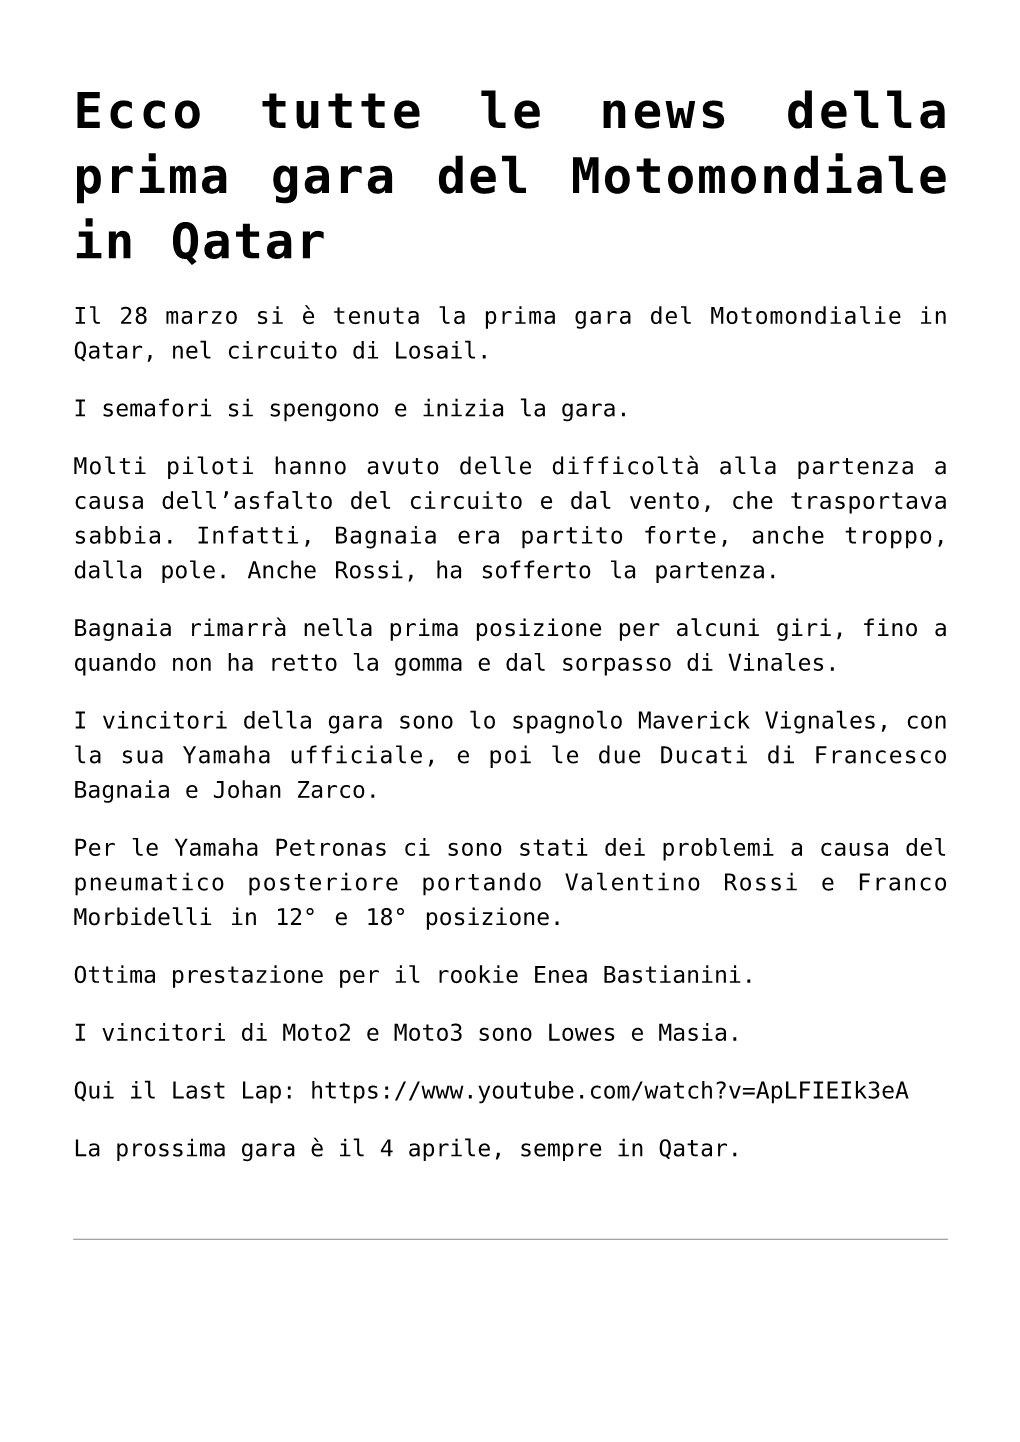 Ecco Tutte Le News Della Prima Gara Del Motomondiale in Qatar,Arriva La